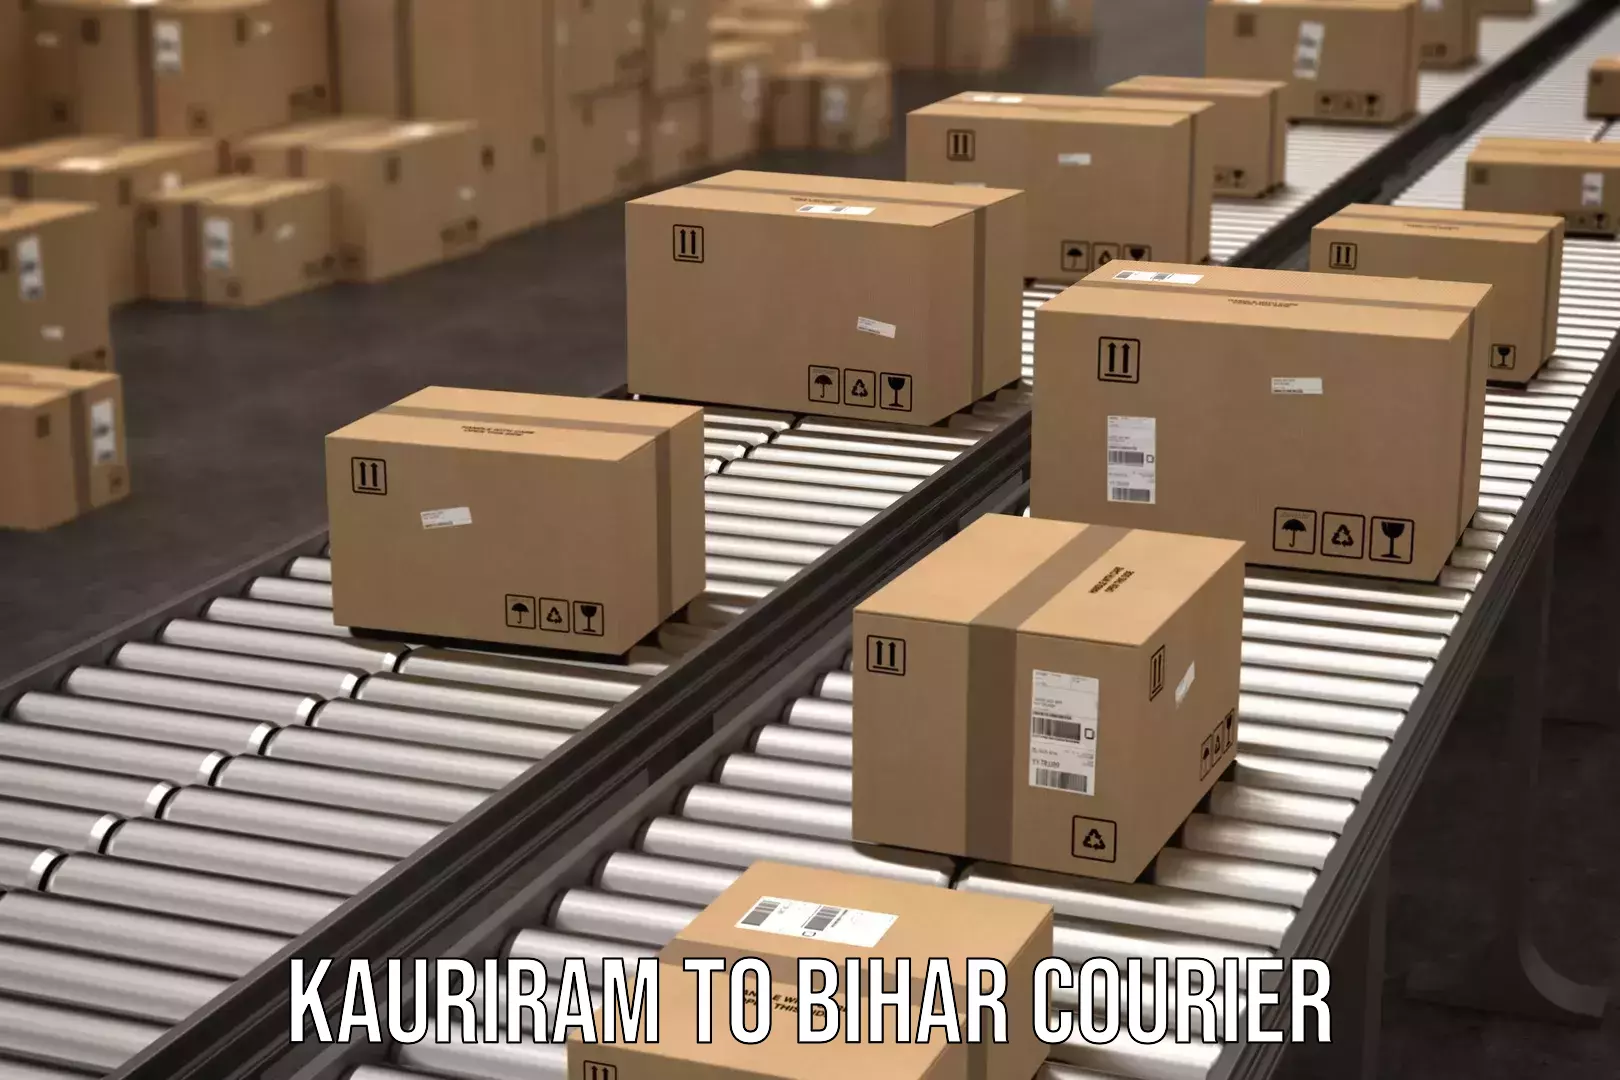 Global logistics network Kauriram to Tribeniganj